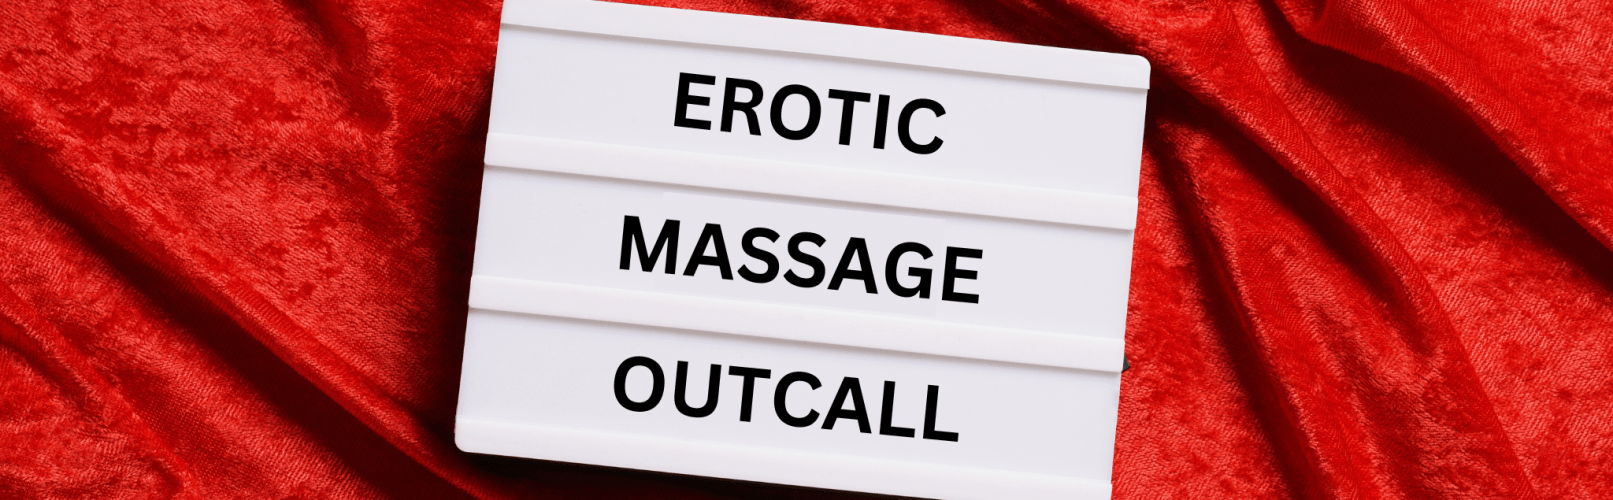 servicii de masaj erotic de lux in deplasare la hotel sau domiciliu